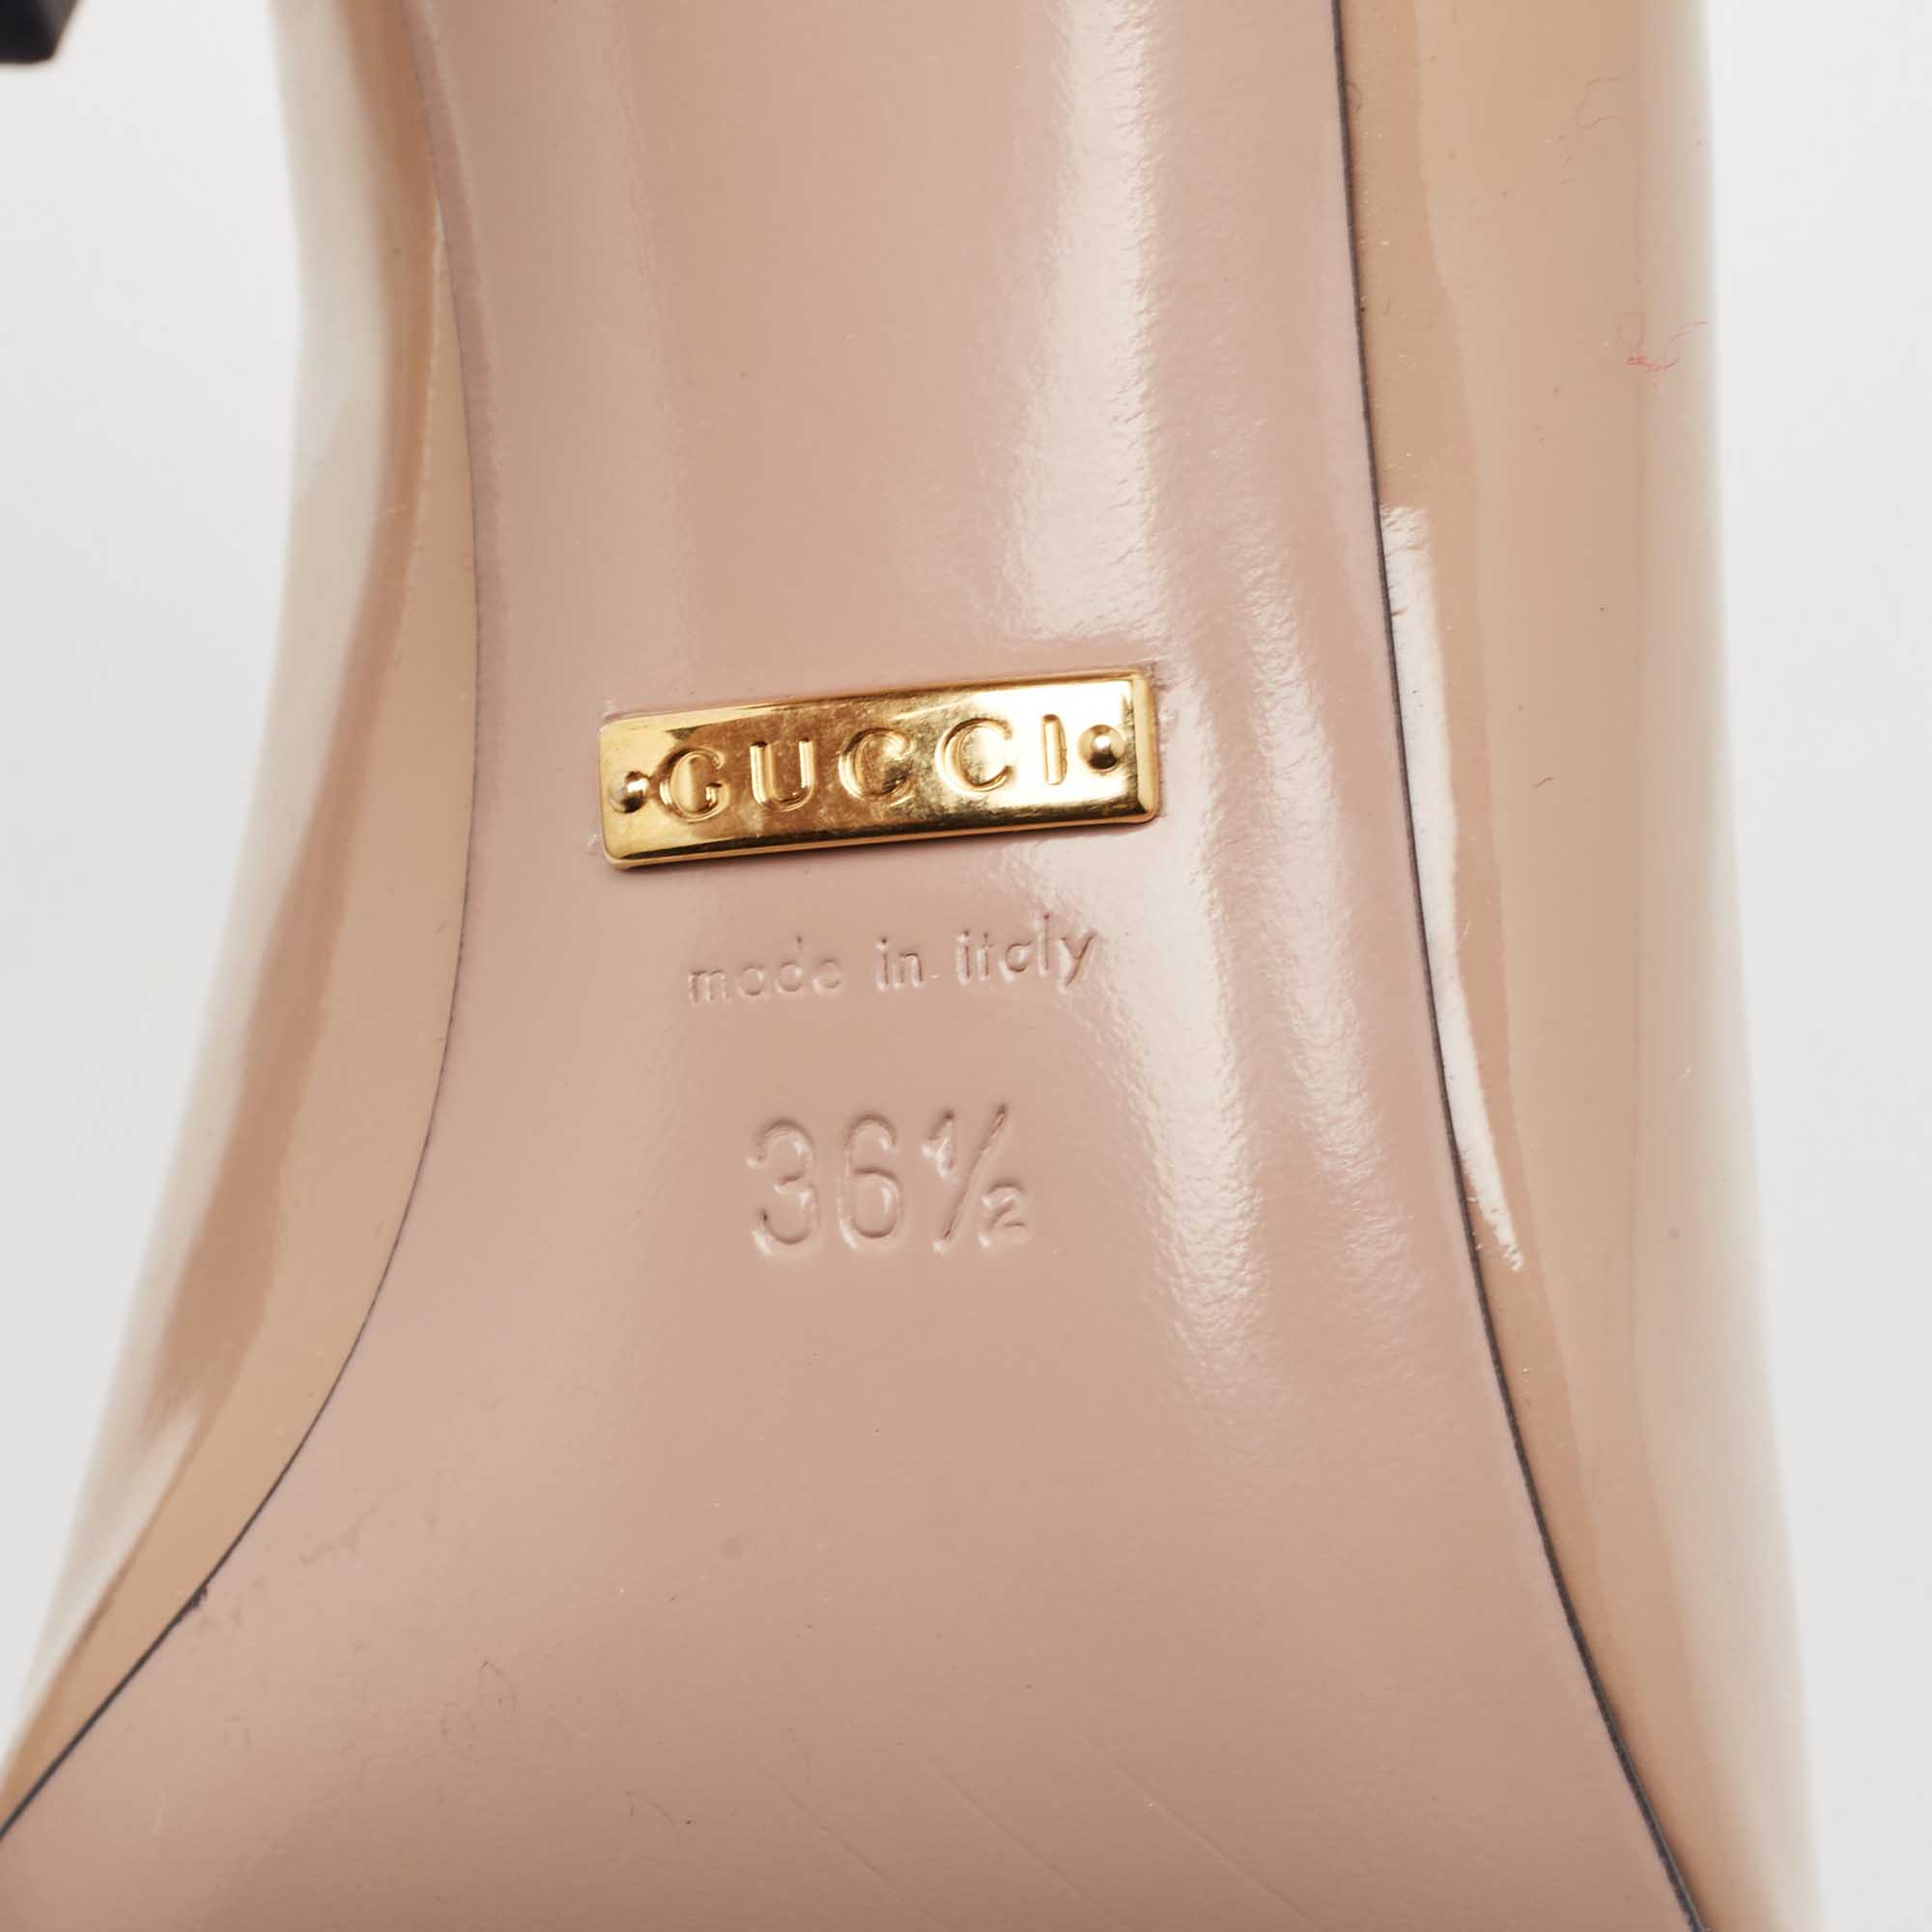 Gucci Beige Patent Leather Horsebit Square Toe Pumps Size 36.5